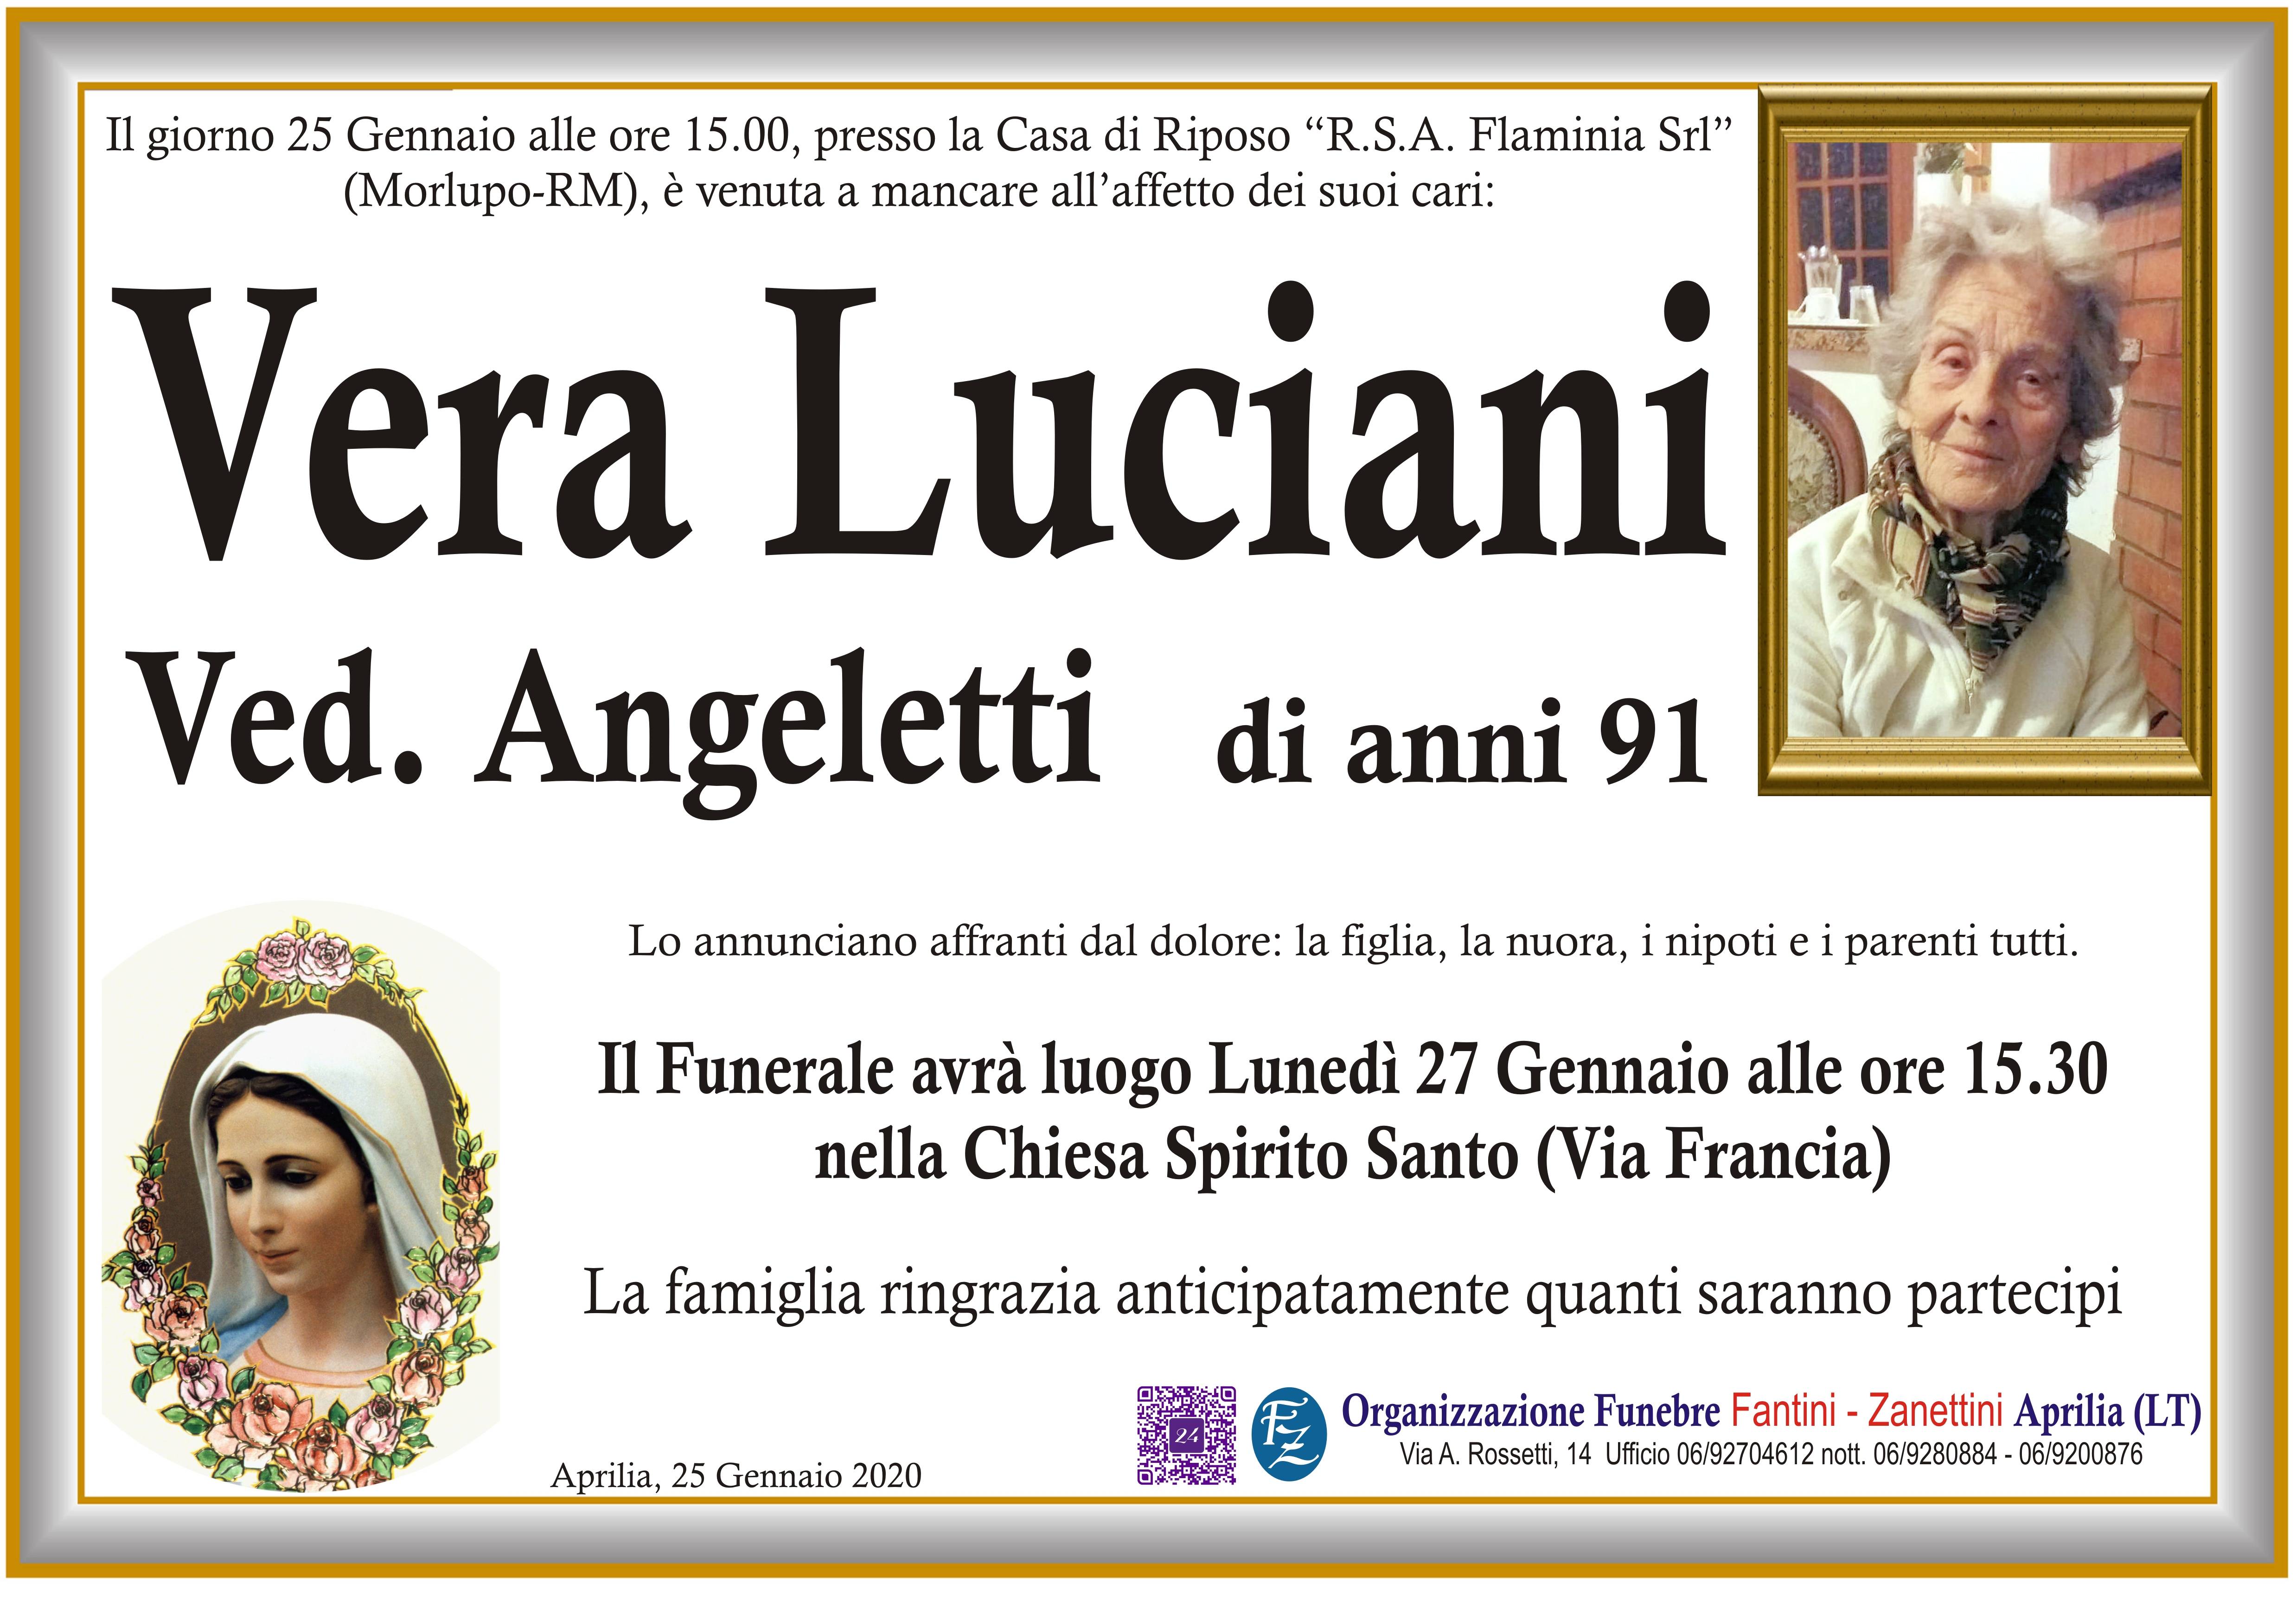 Vera Luciani